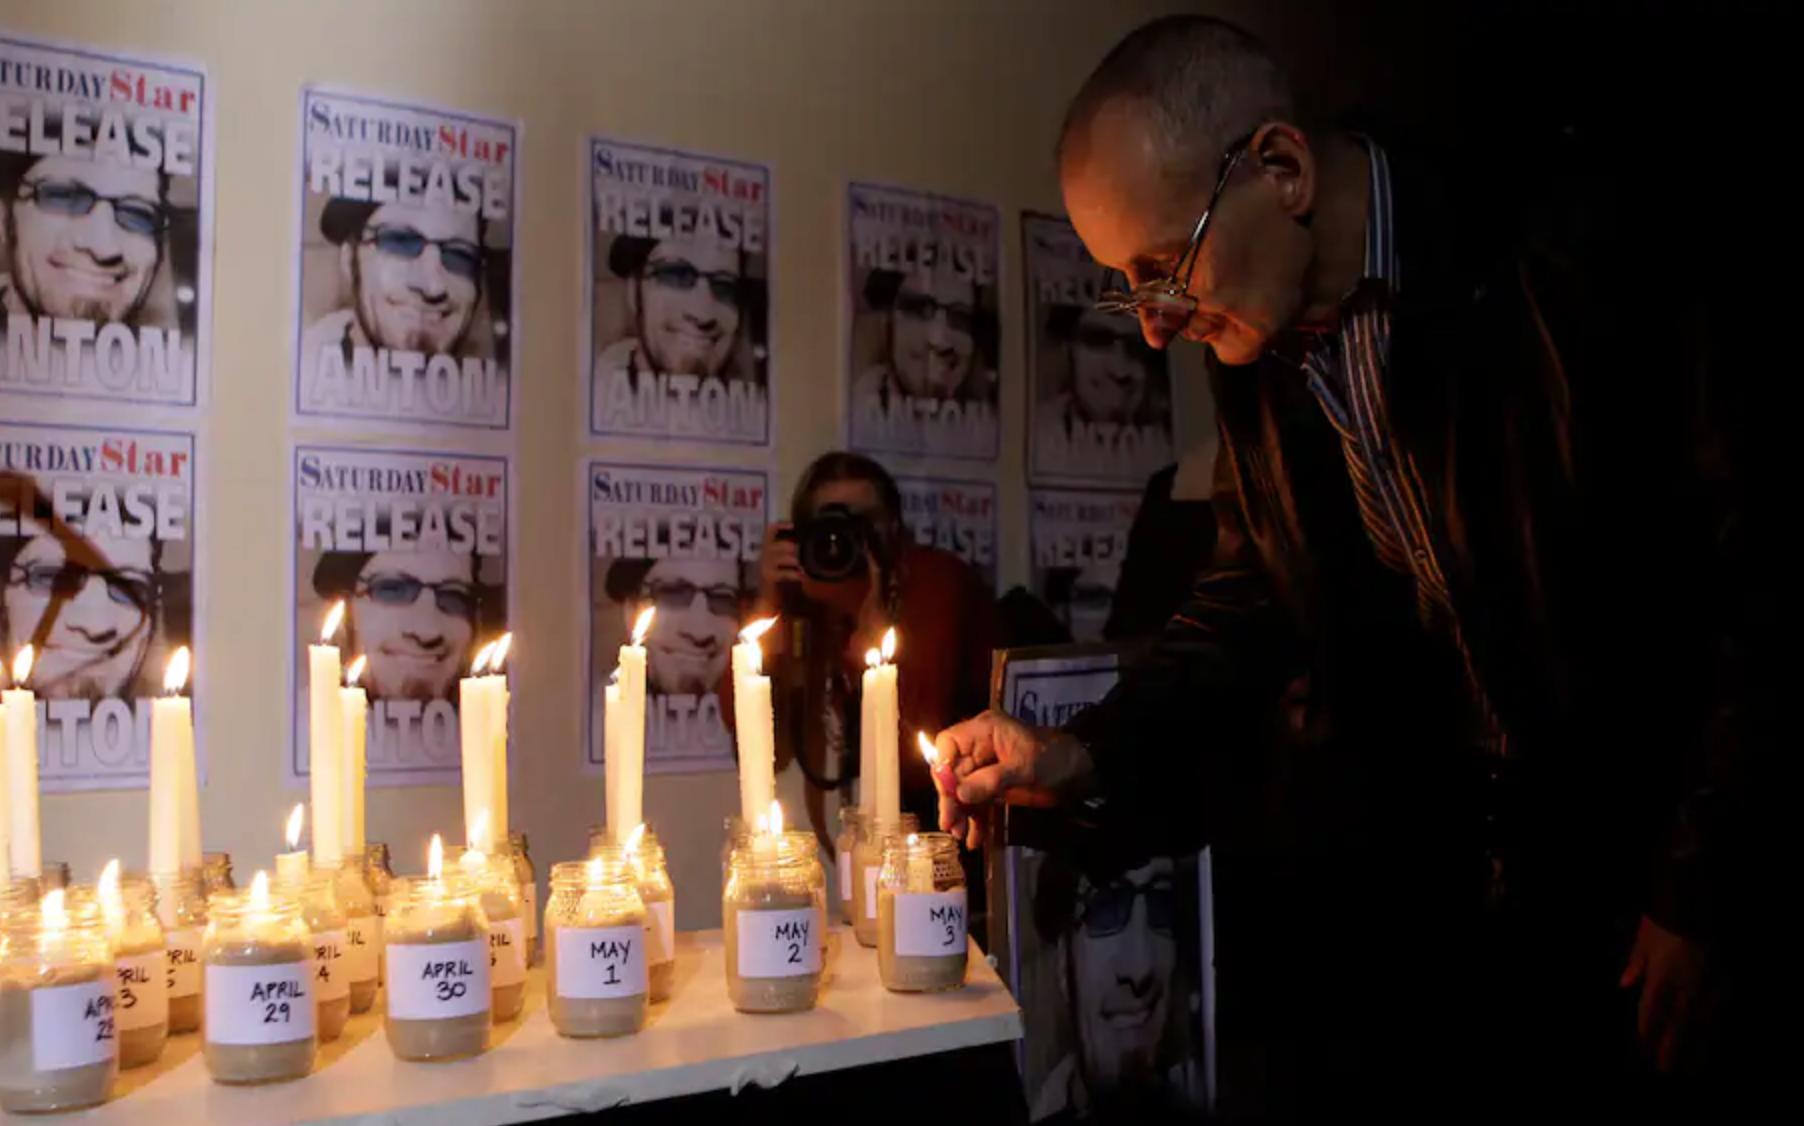 “واشنطن بوست”: إجراءات للتحقيق في قضية صحفي قتله موالون للقذافي